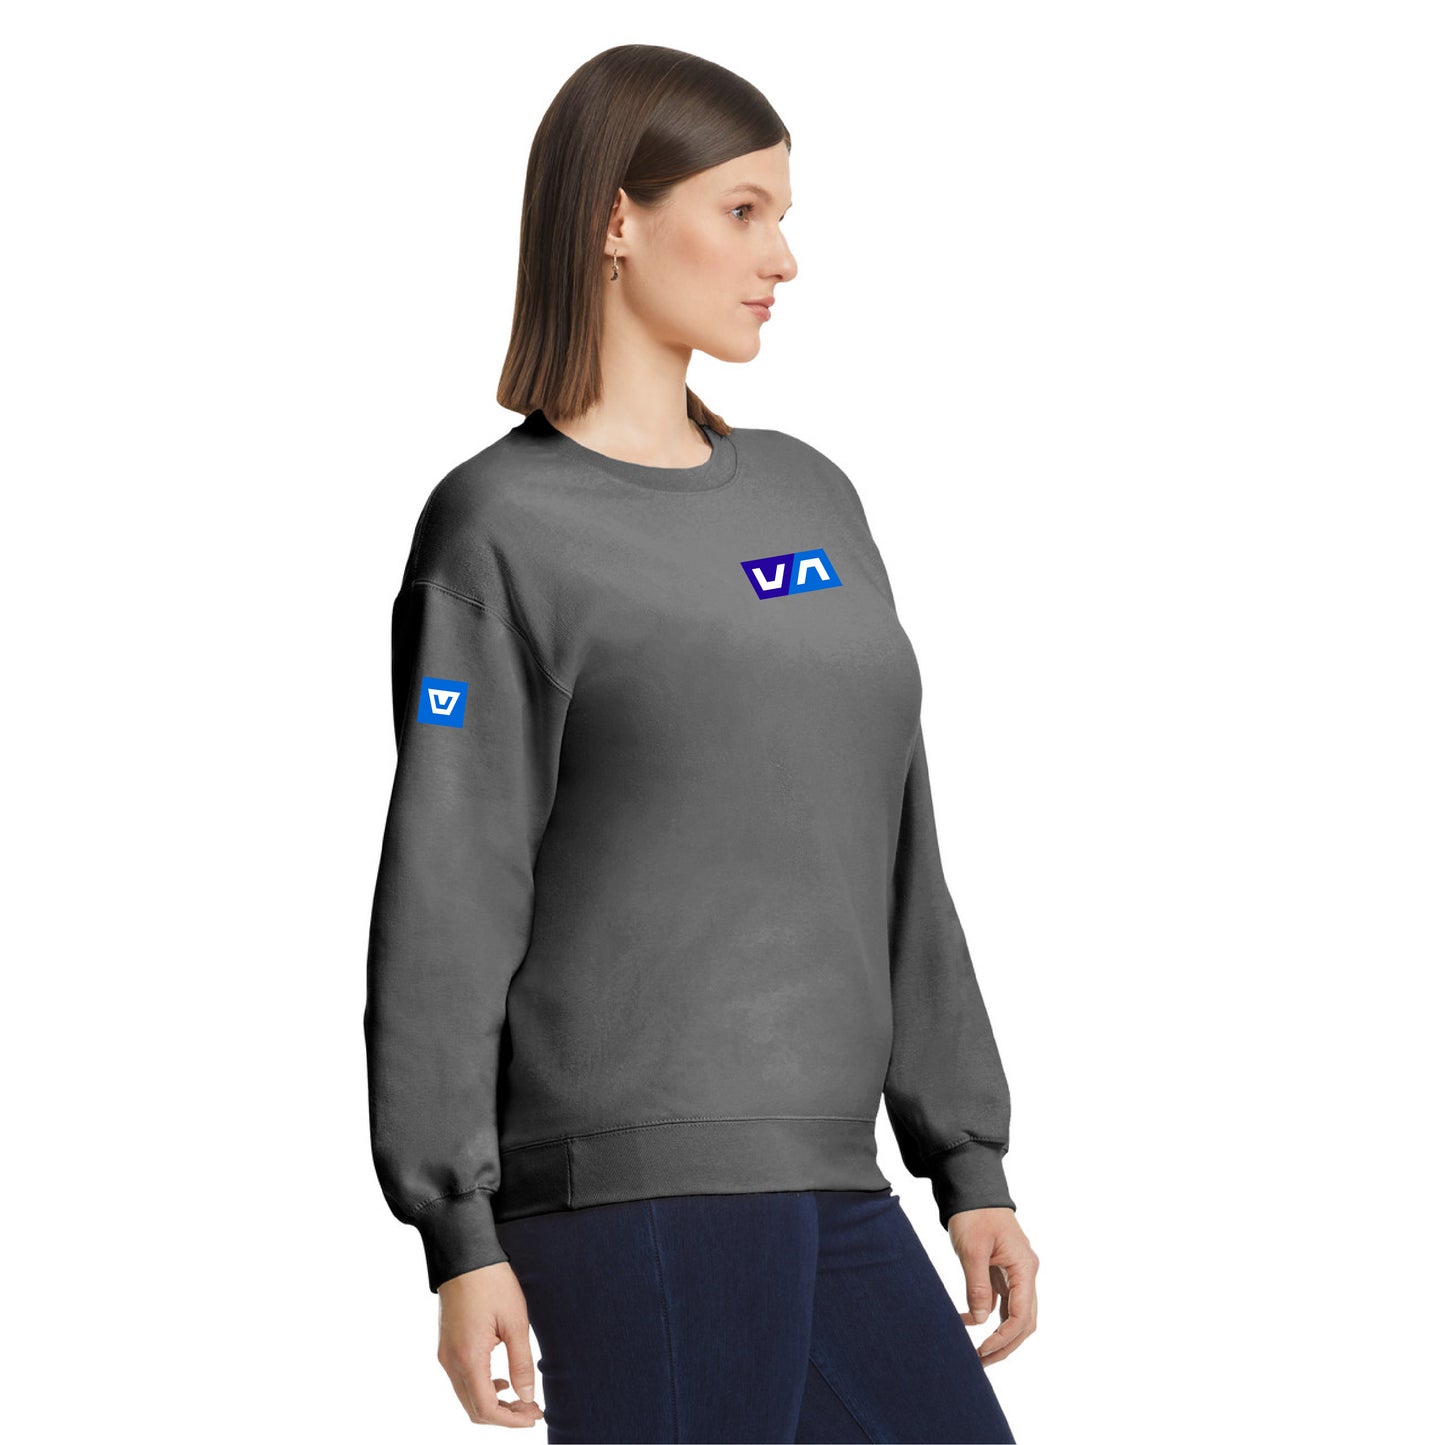 Marine Force Waves Identitäts-Sweatshirt